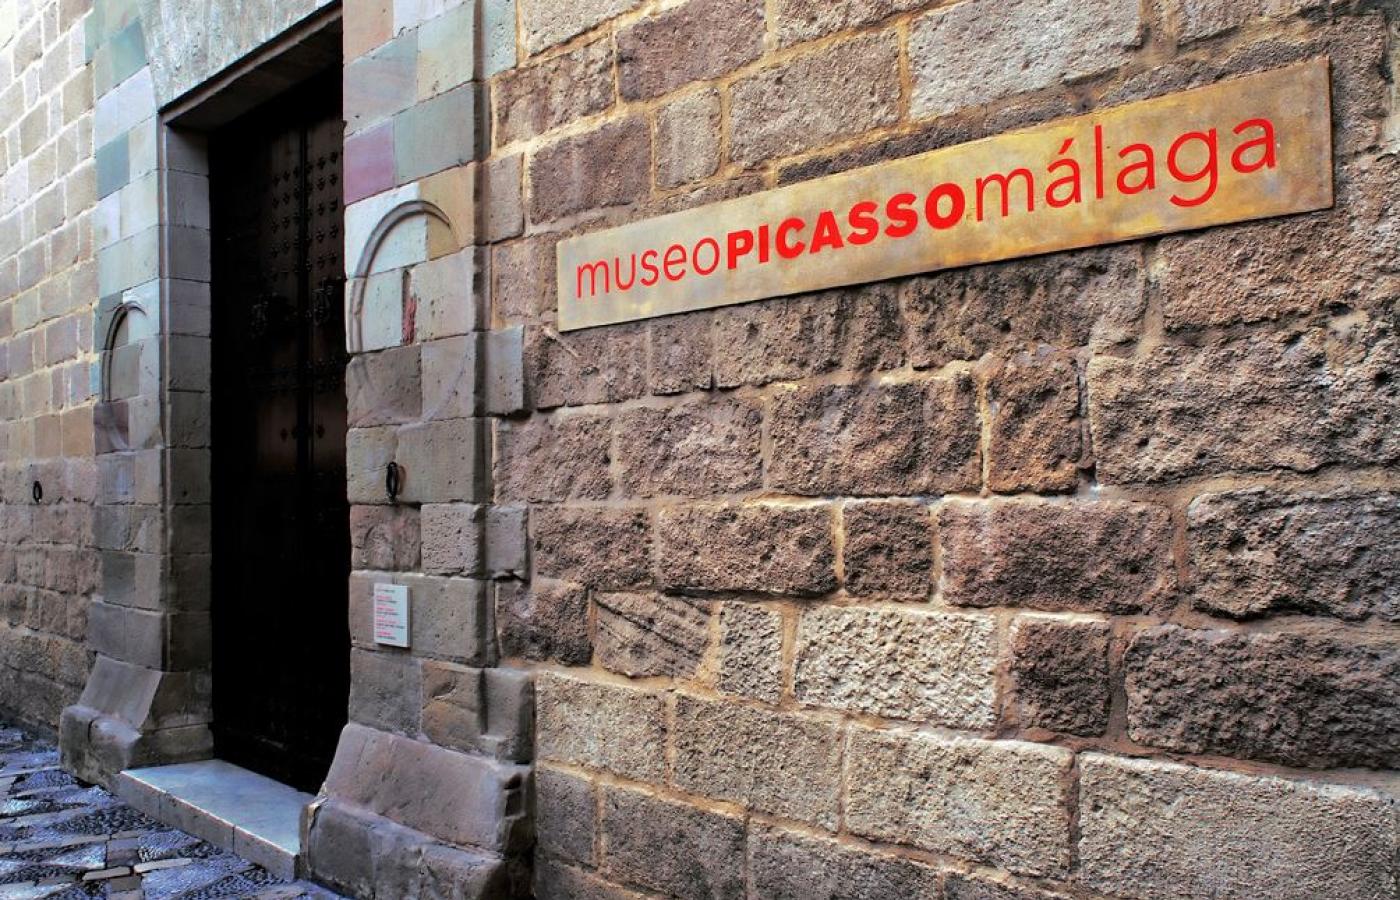 Muzeum Picassa, Malaga